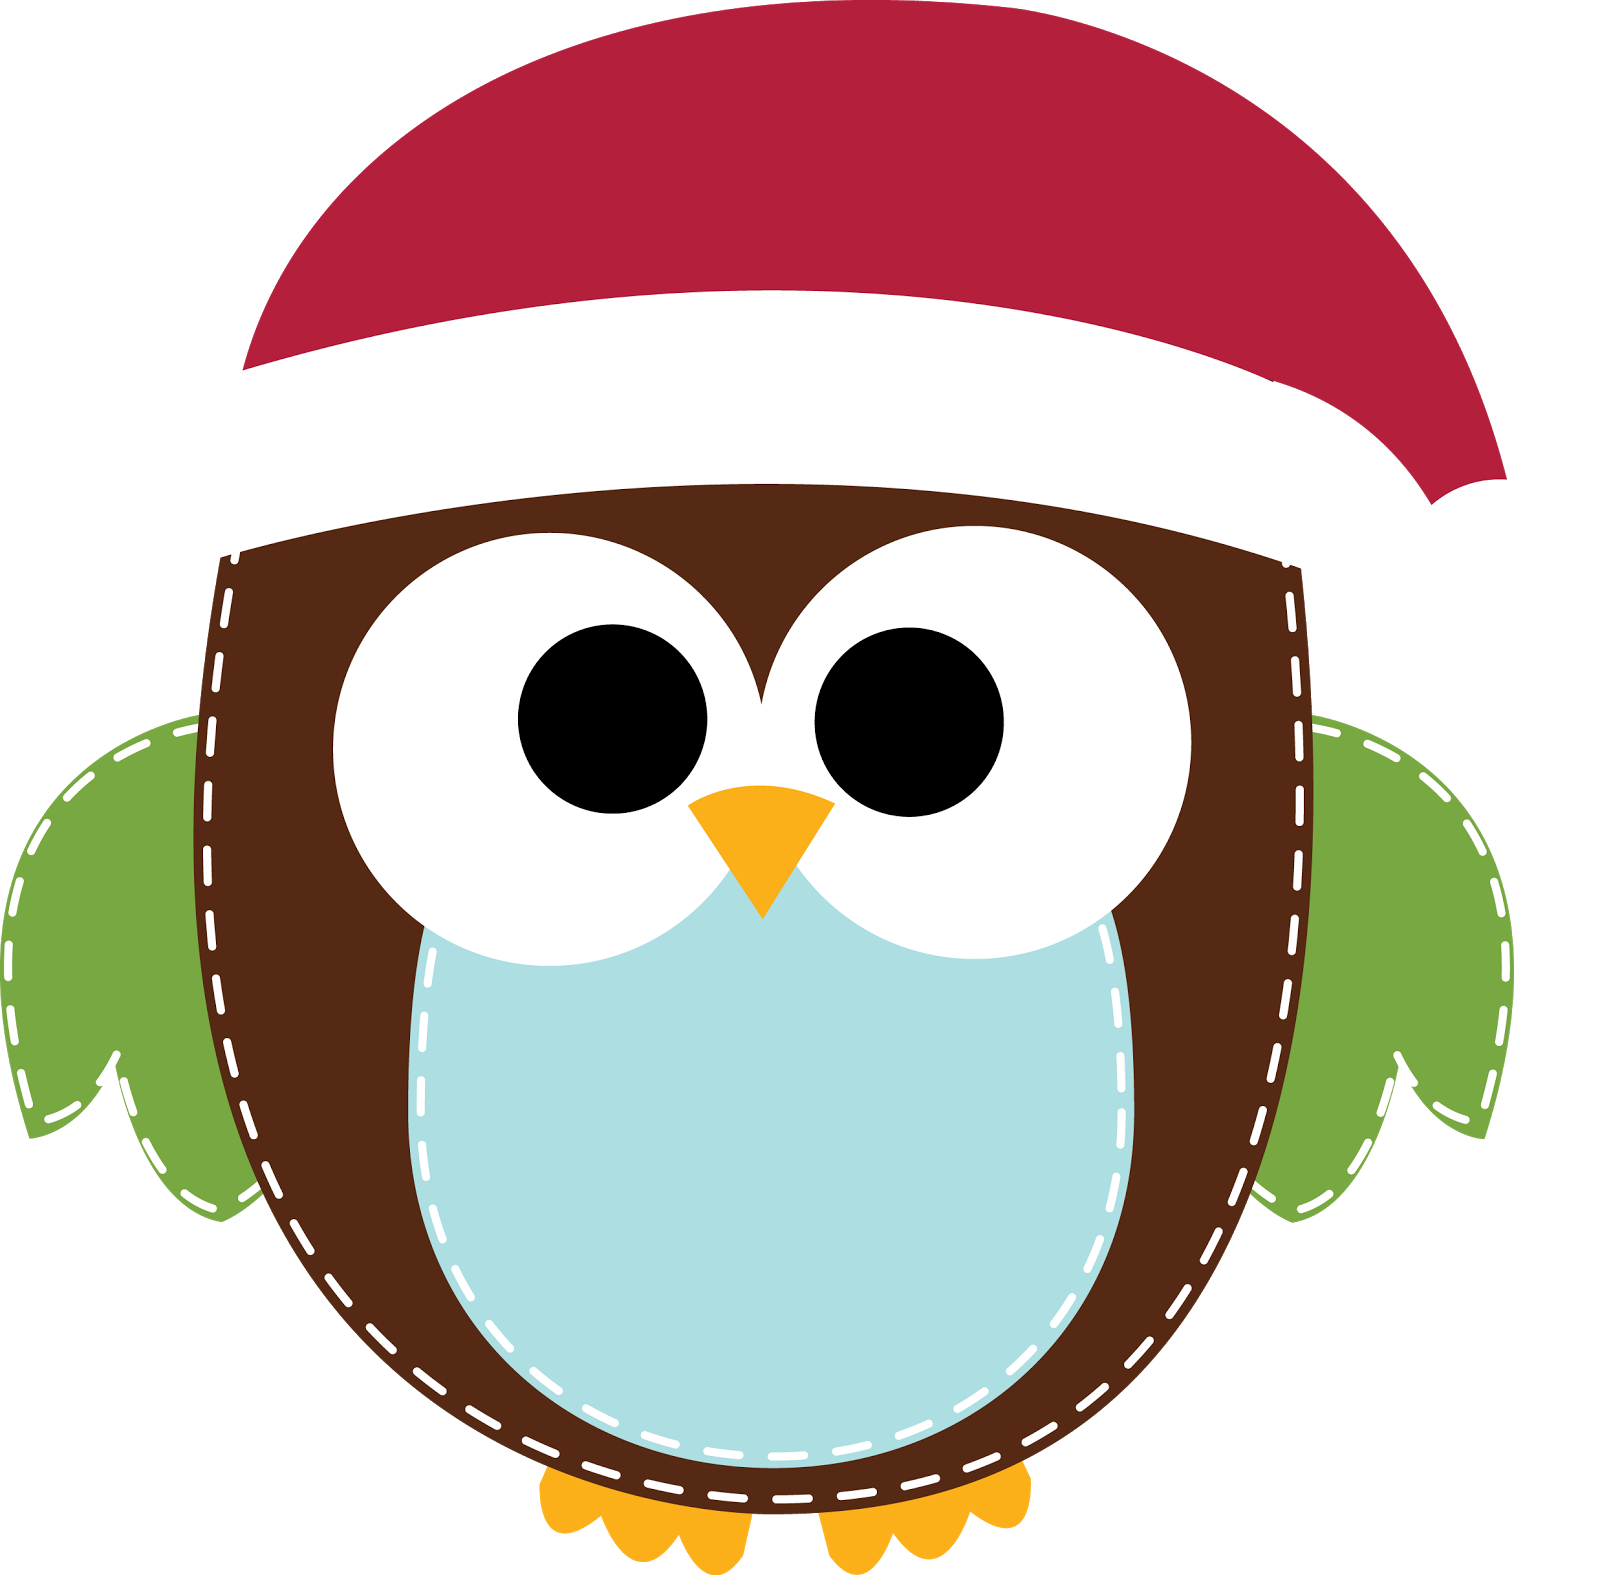 Christmas Owls Clipart Clip A